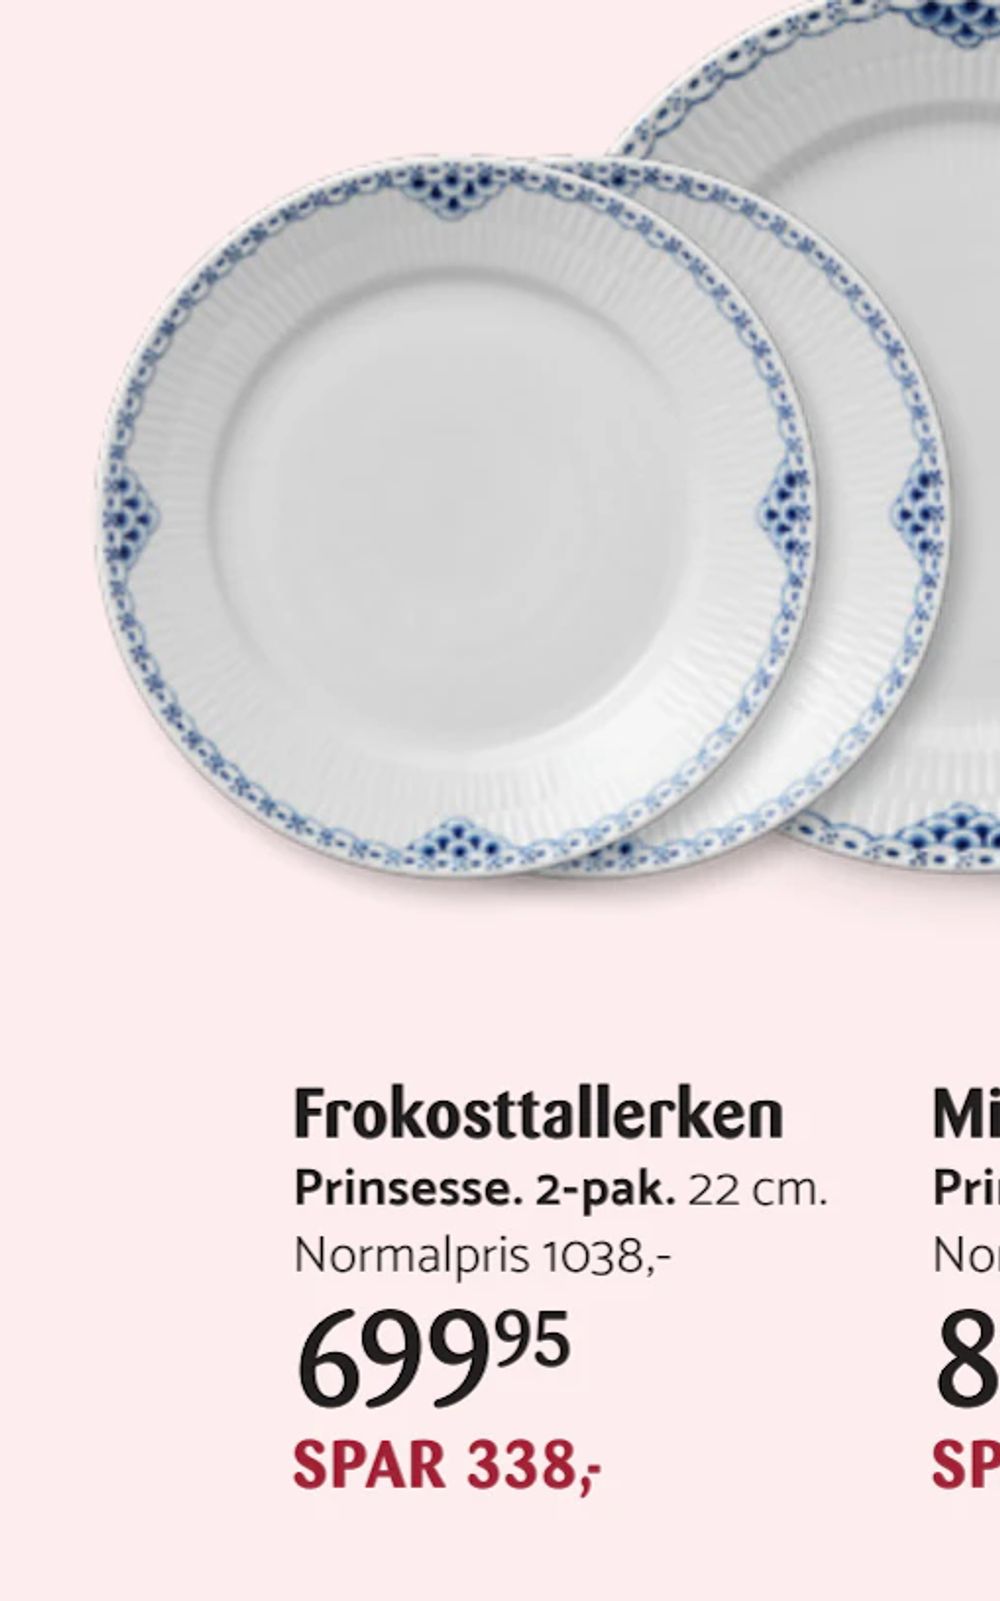 Tilbud på Frokosttallerken fra Kop & Kande til 699,95 kr.